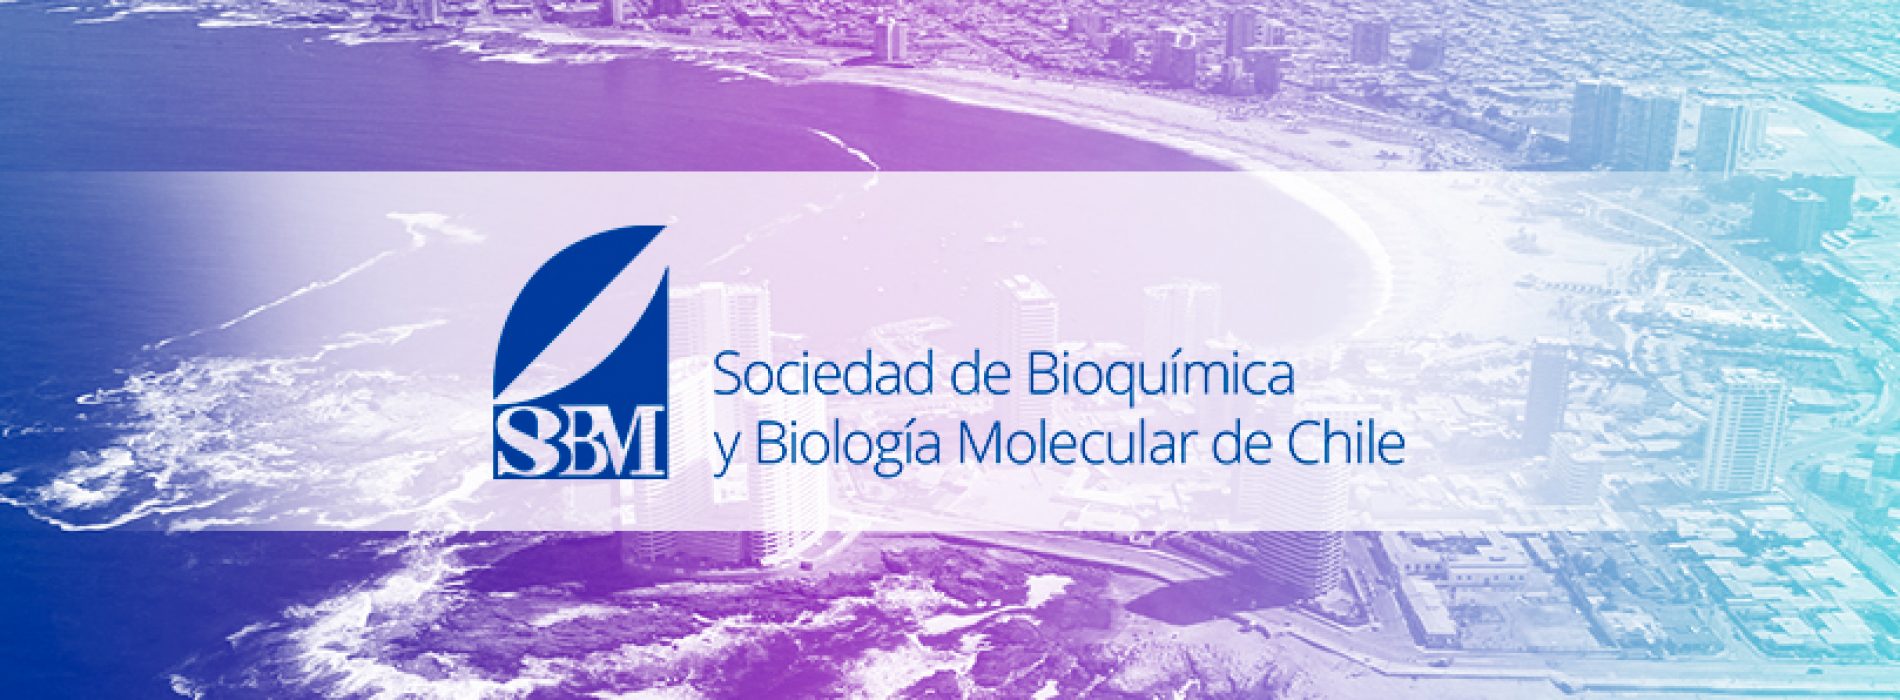 Información congreso Sociedad de Bioquímica y Biología Molecular de Chile 2018